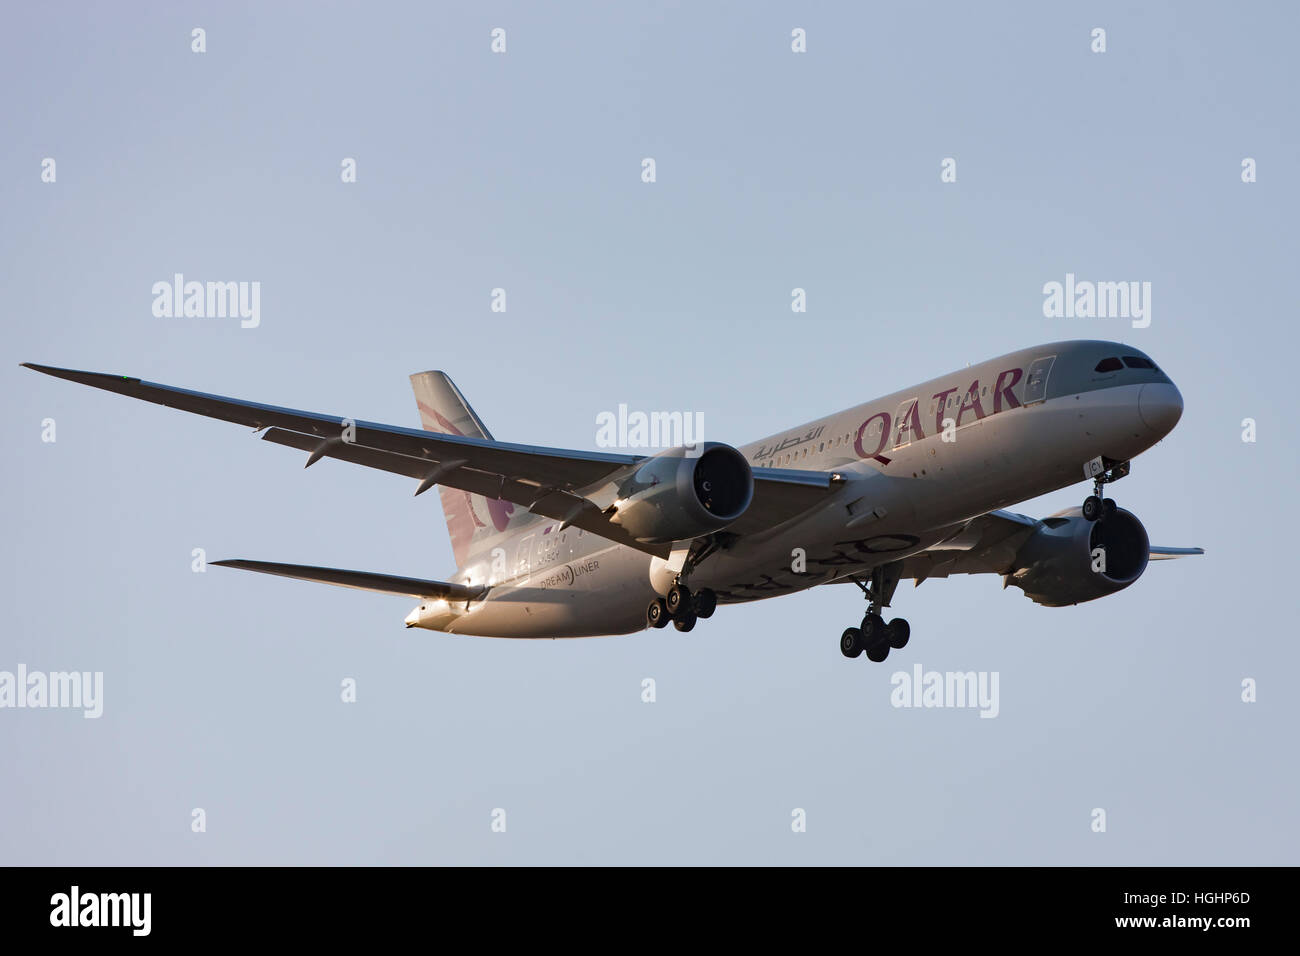 Qatar Airliner landing in Copenhagen Stock Photo